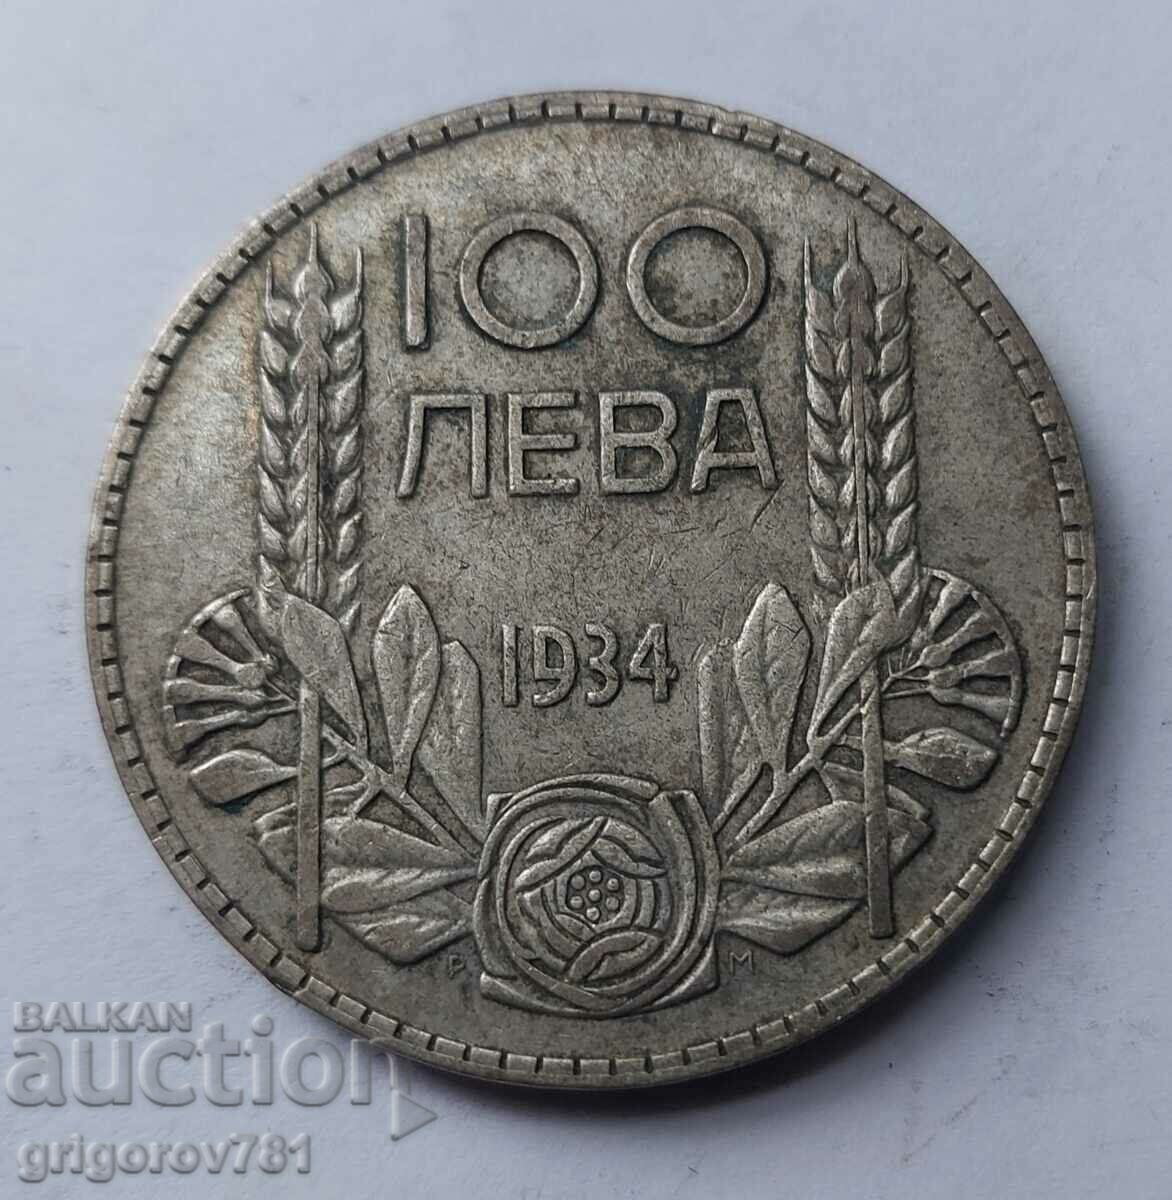 100 leva silver Bulgaria 1934 - silver coin #43